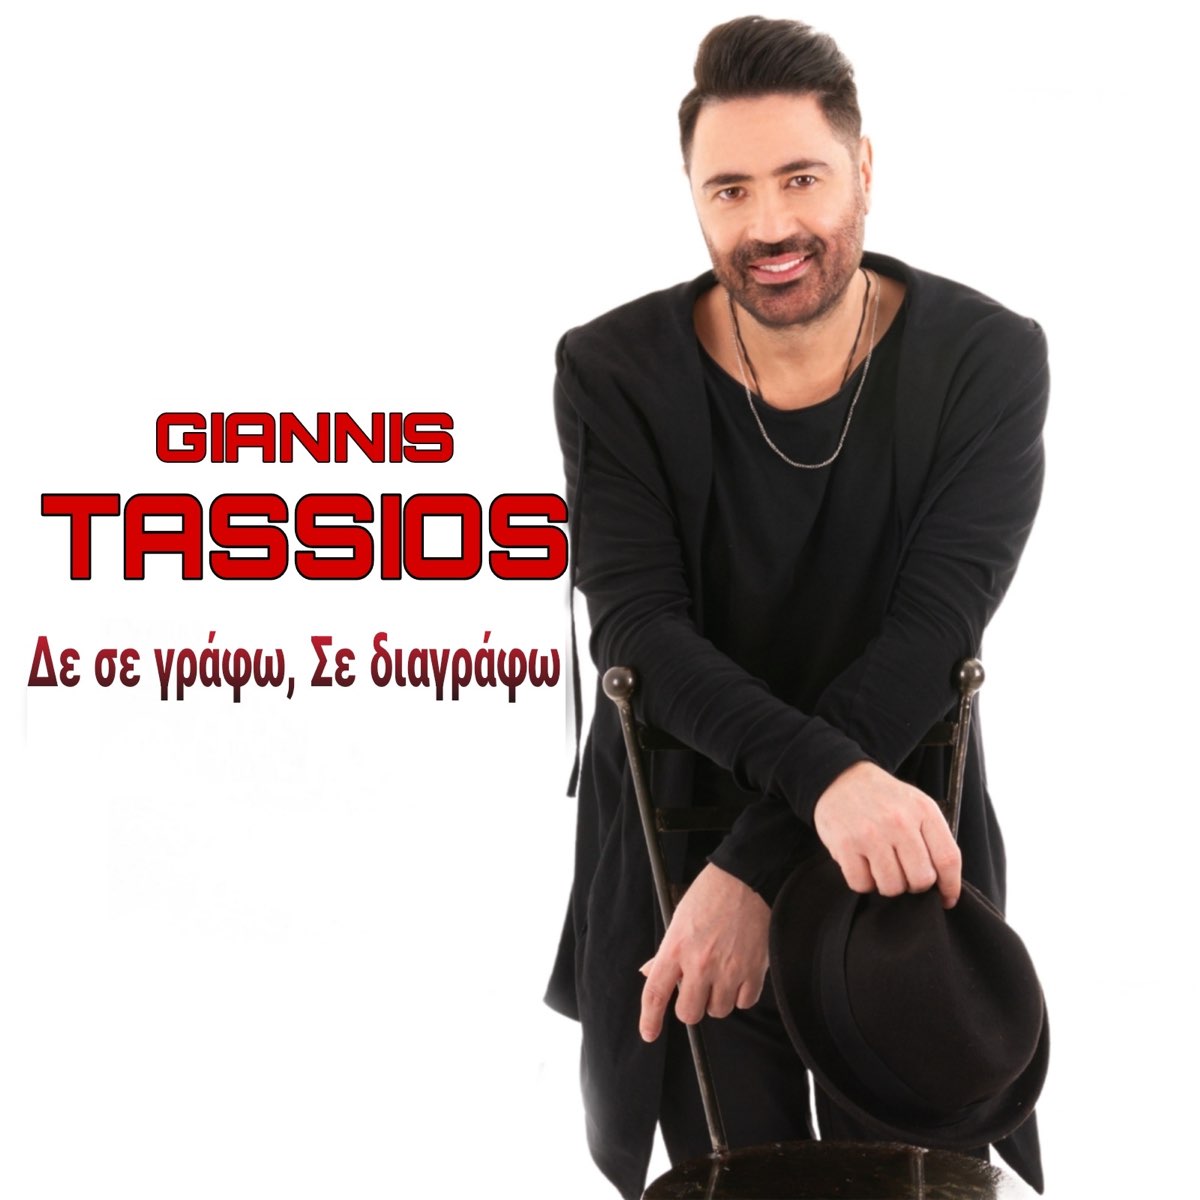 Δε Σε Γράφω, Σε Διαγράφω - Single - Album by Giannis Tassios - Apple Music